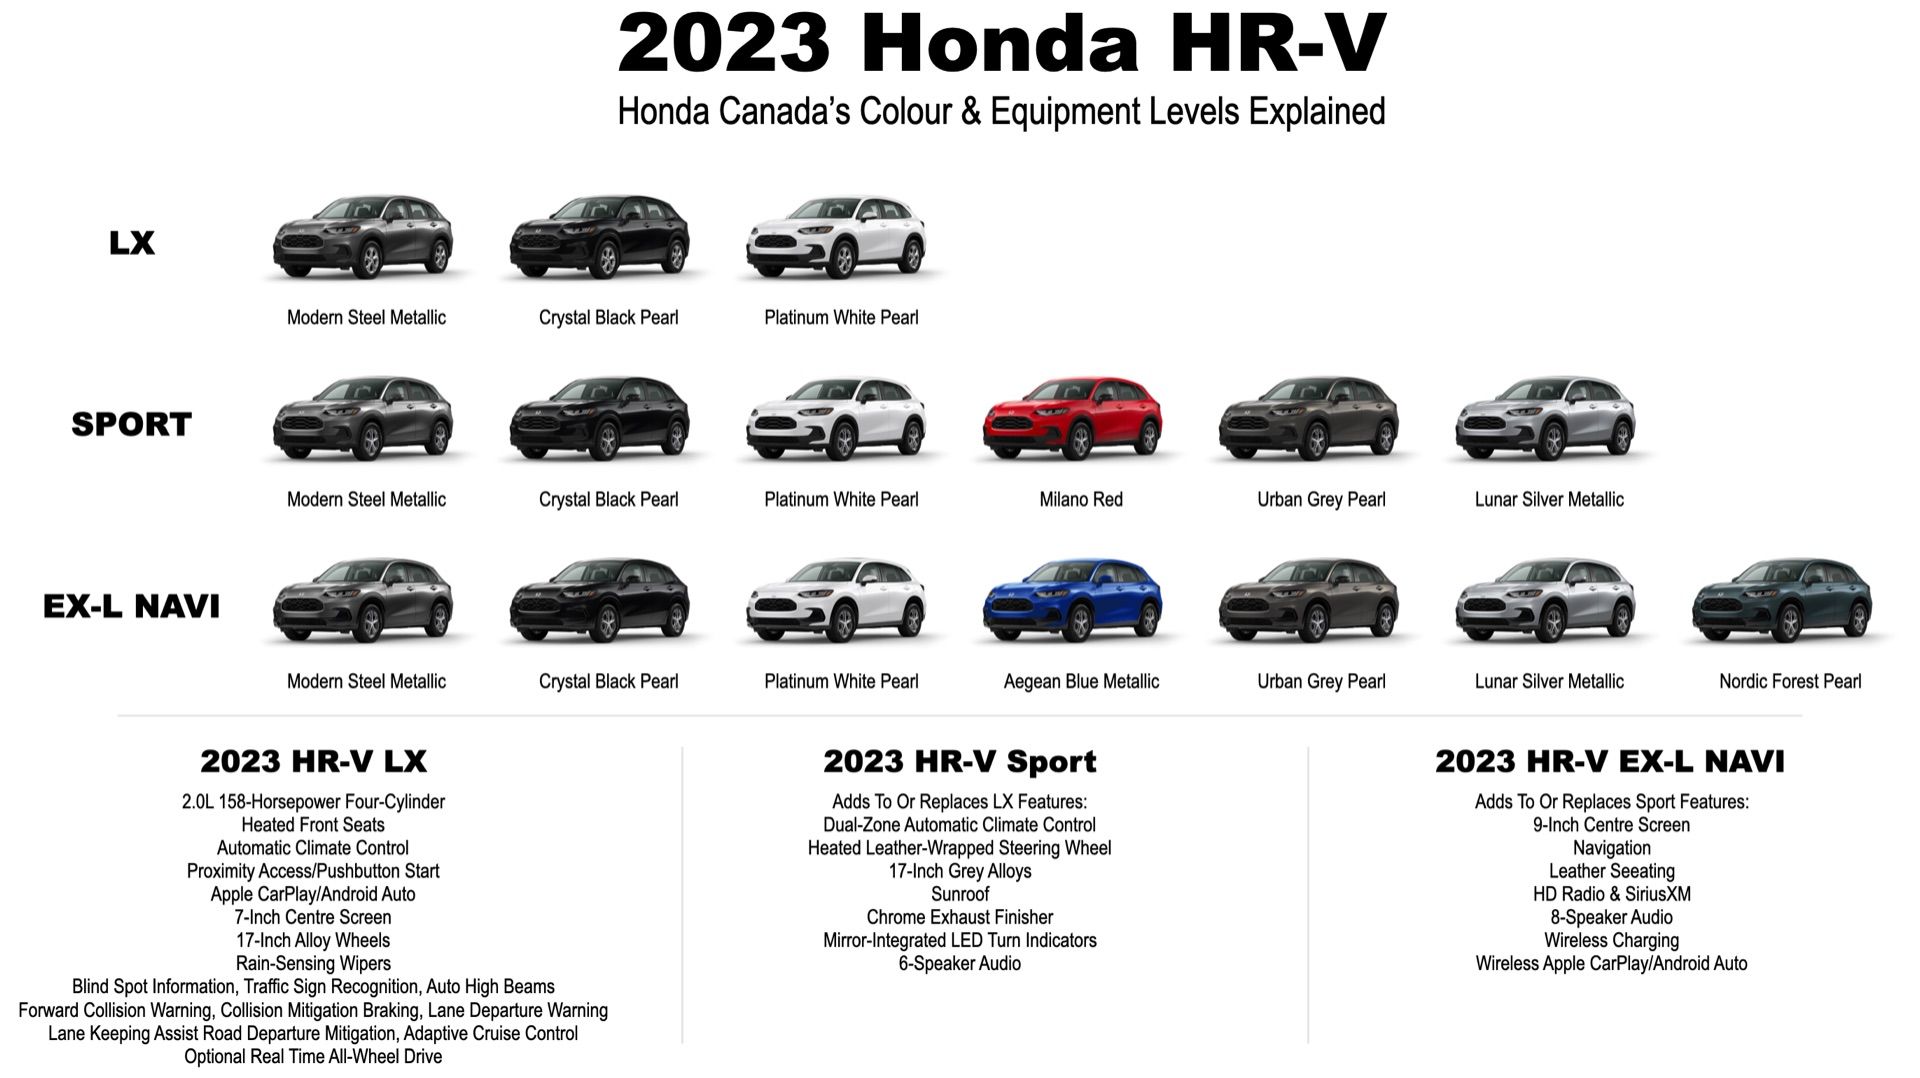 2023 Honda HR-V: Every Canadian Colour And Trim Level Combination